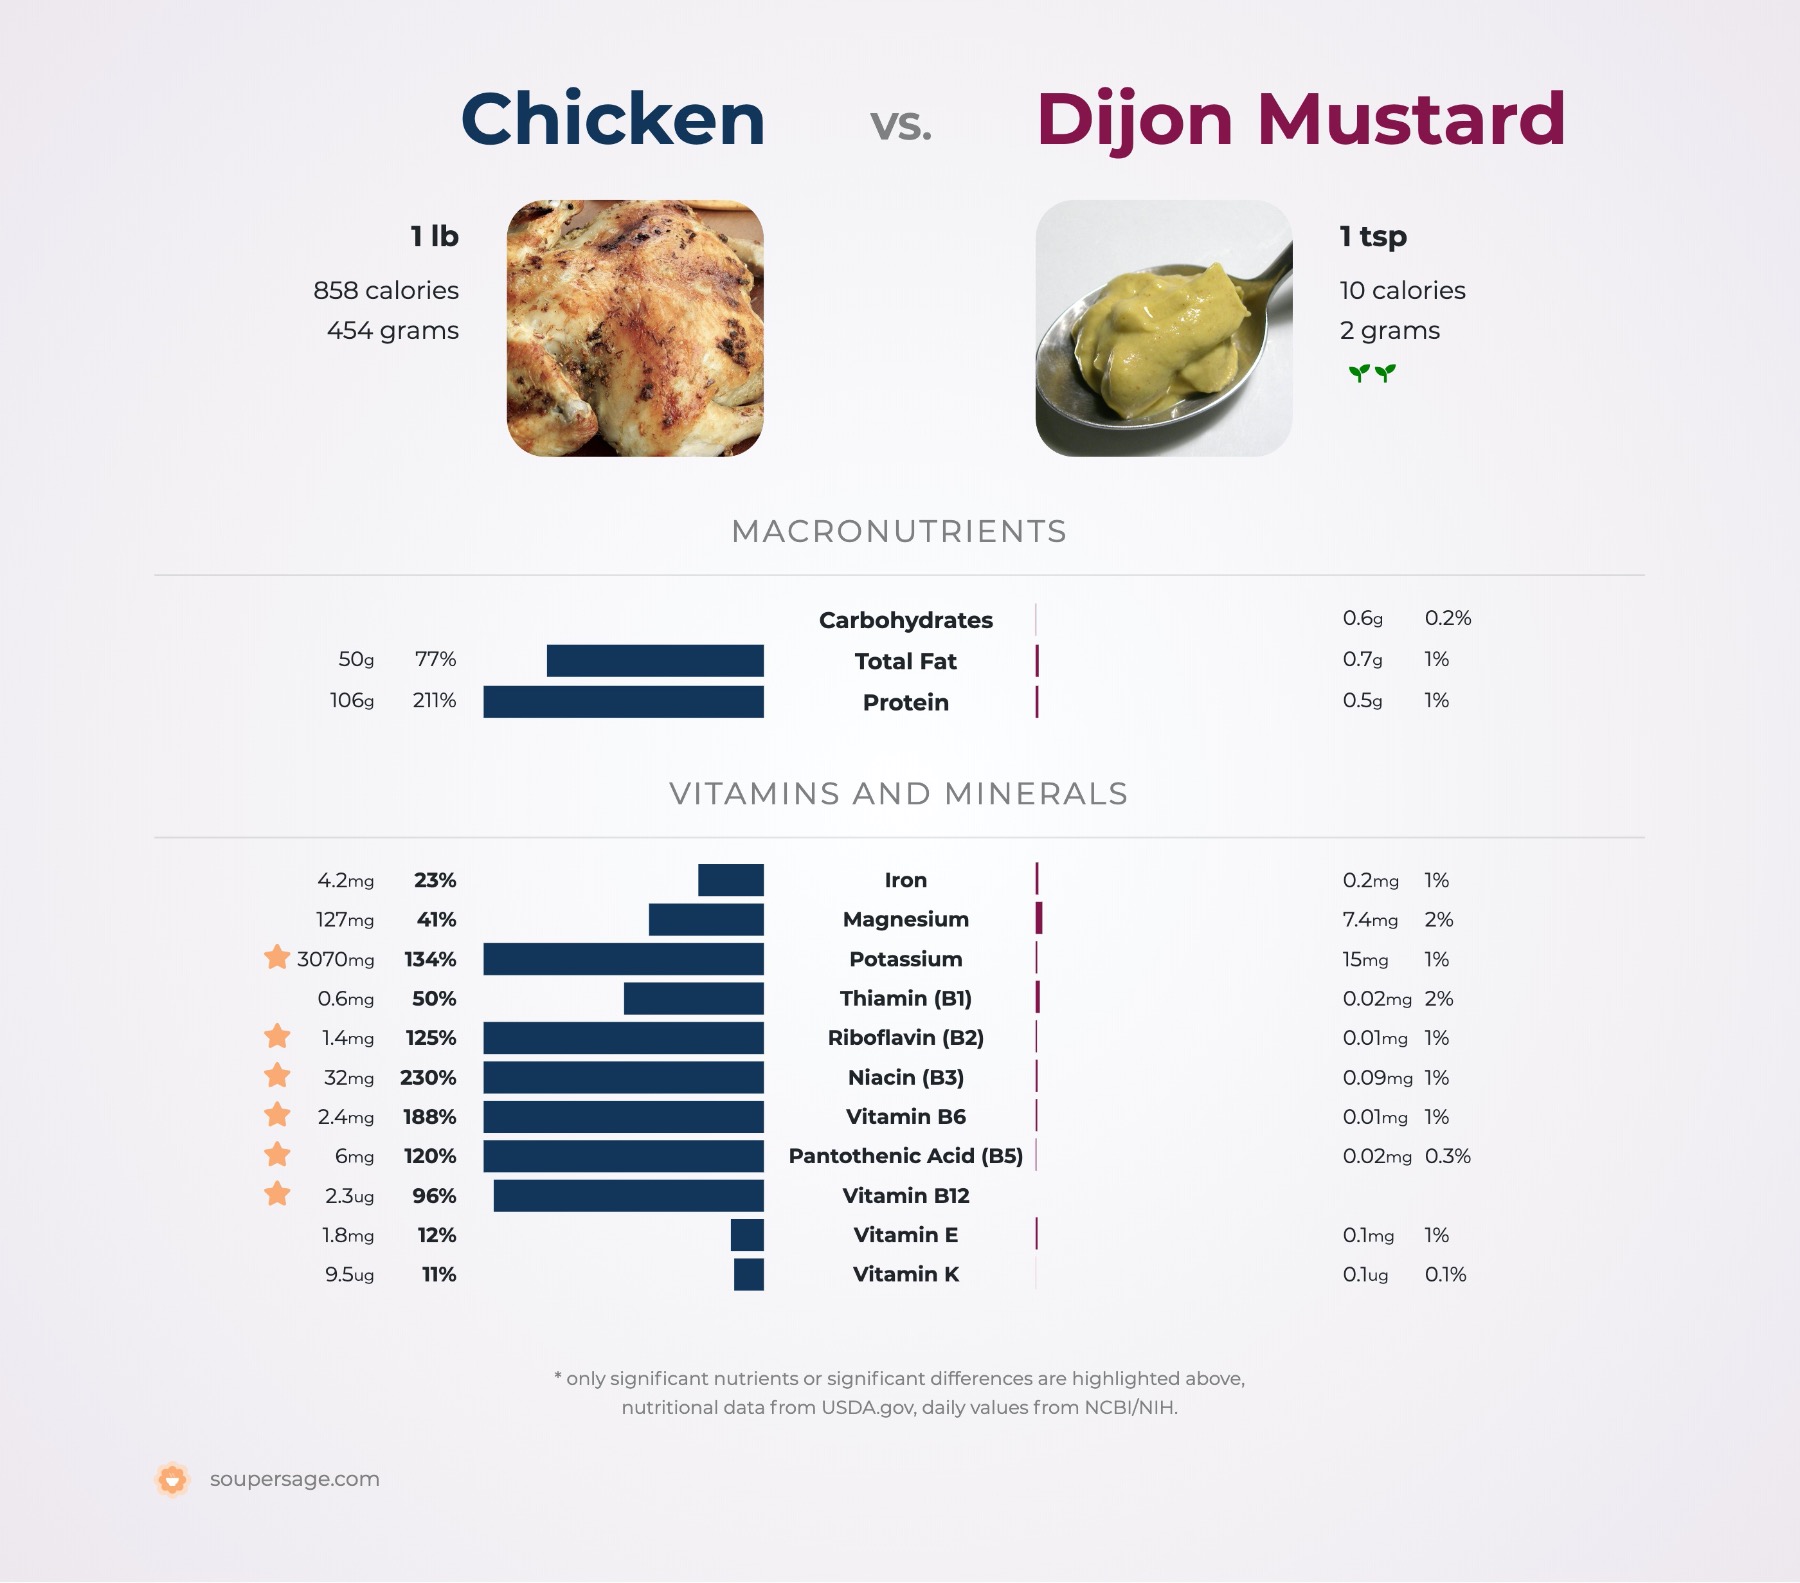 nutrition comparison of chicken vs. dijon mustard